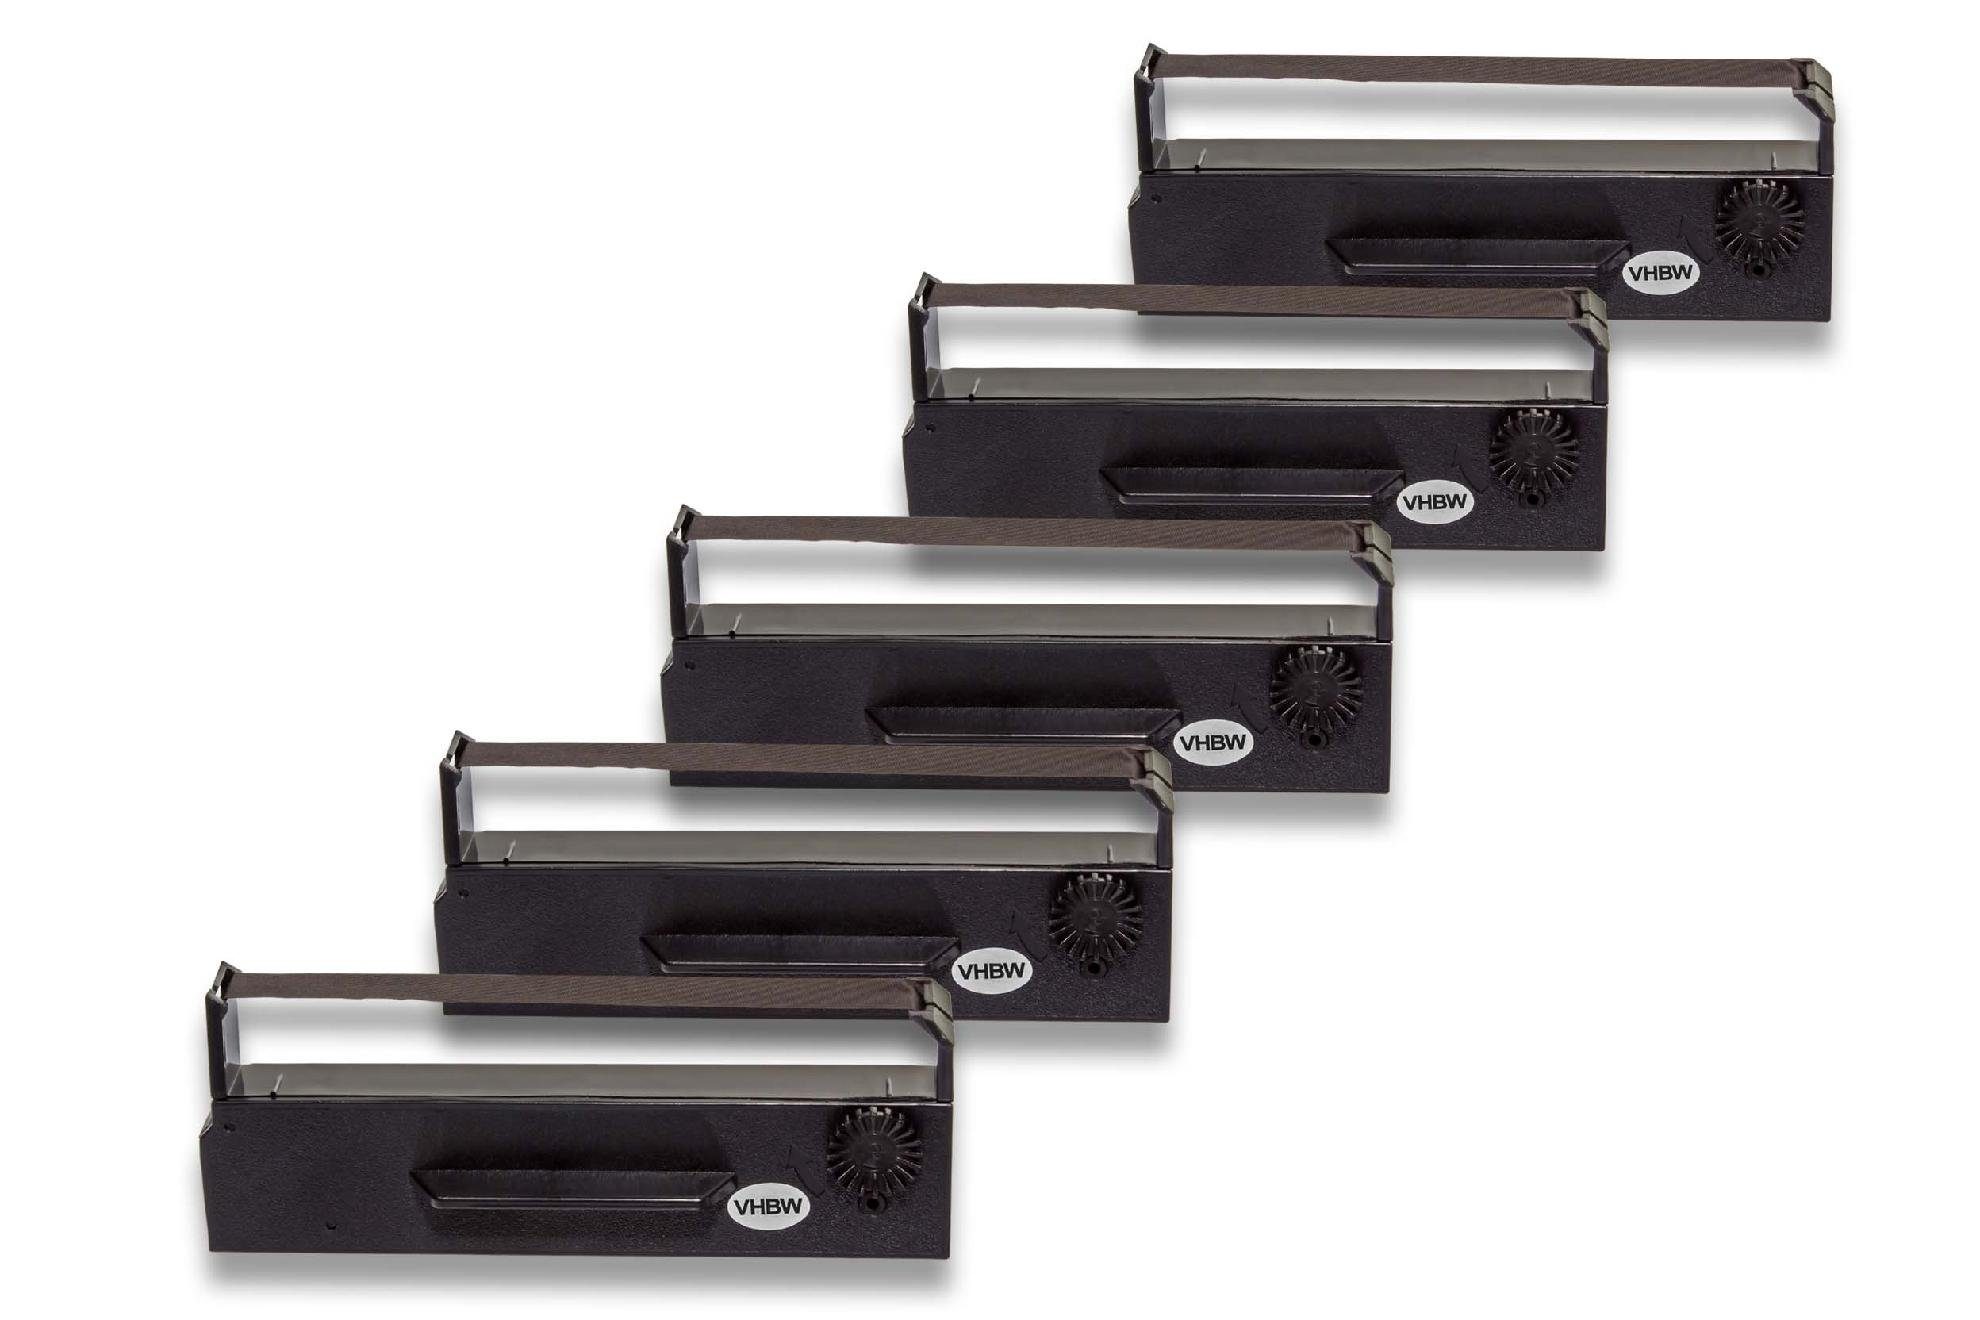 vhbw NCR passend Printer, & Nadeldrucker 5100 2700 Beschriftungsband, Slip Kopierer 999-5200, Micros Drucker für